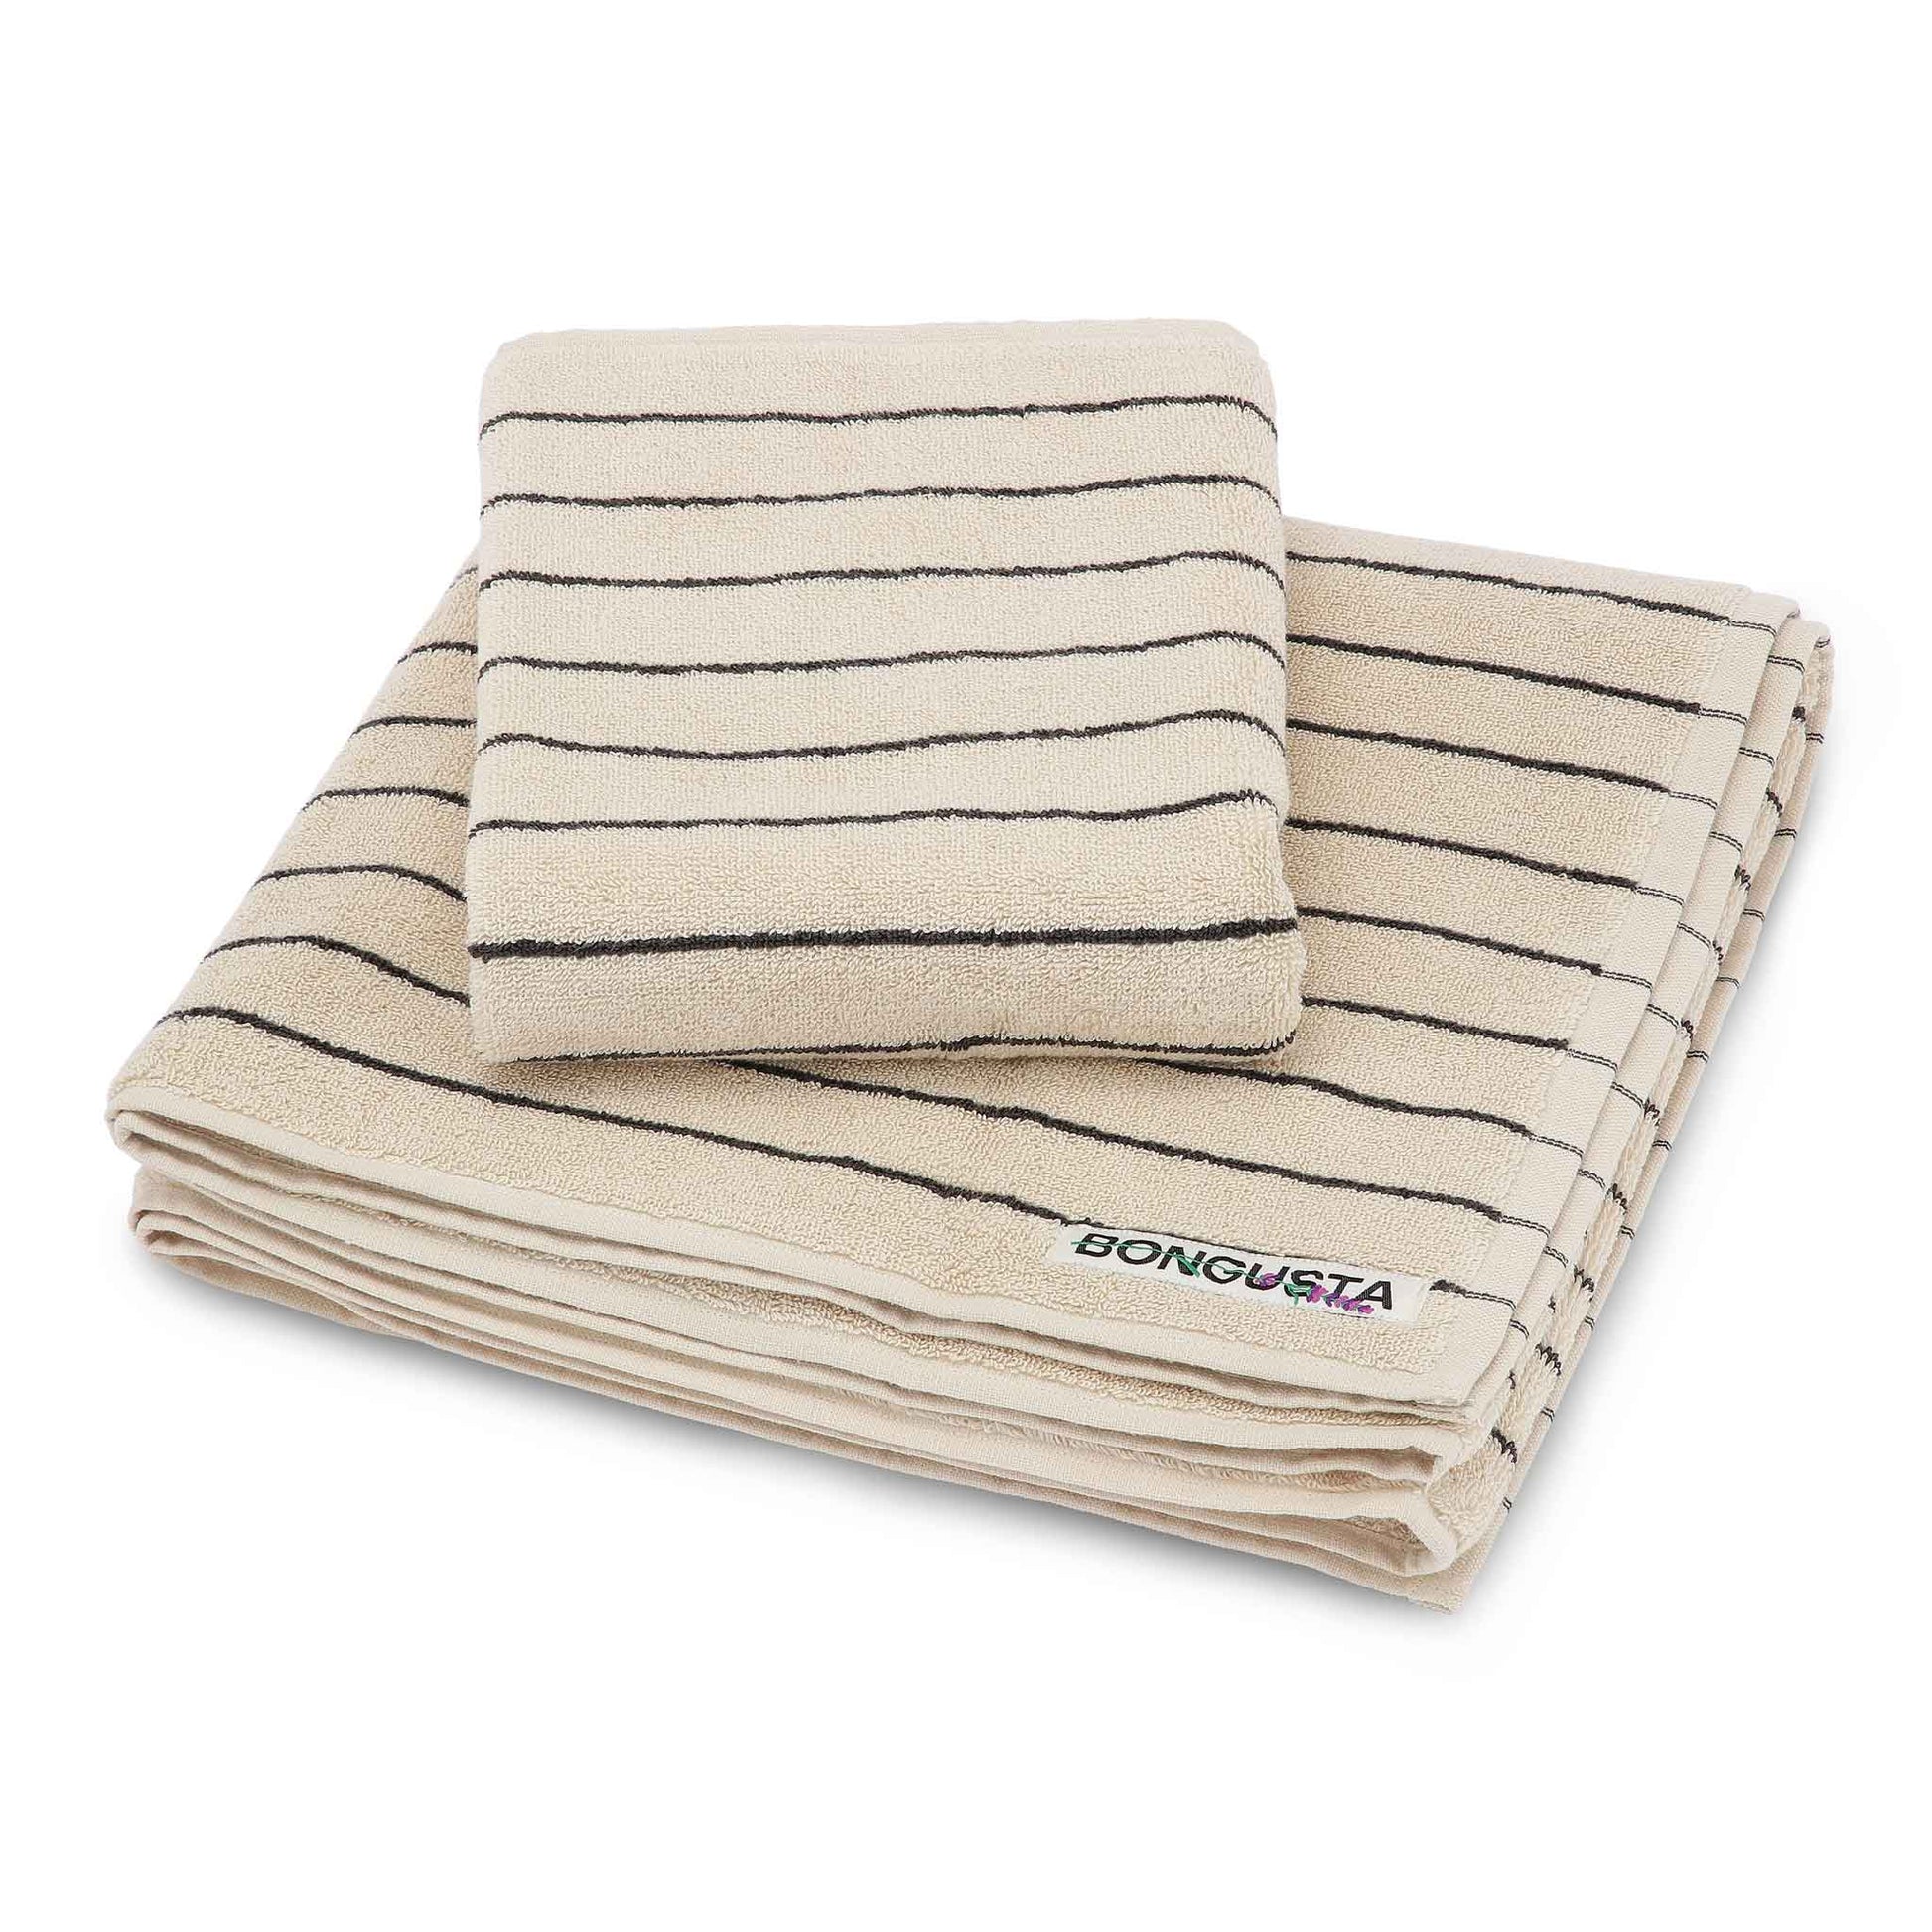 Cremefarvede ØkoTex håndklæder med tynde sorte striber fra Bongusta, fra 175 kr.